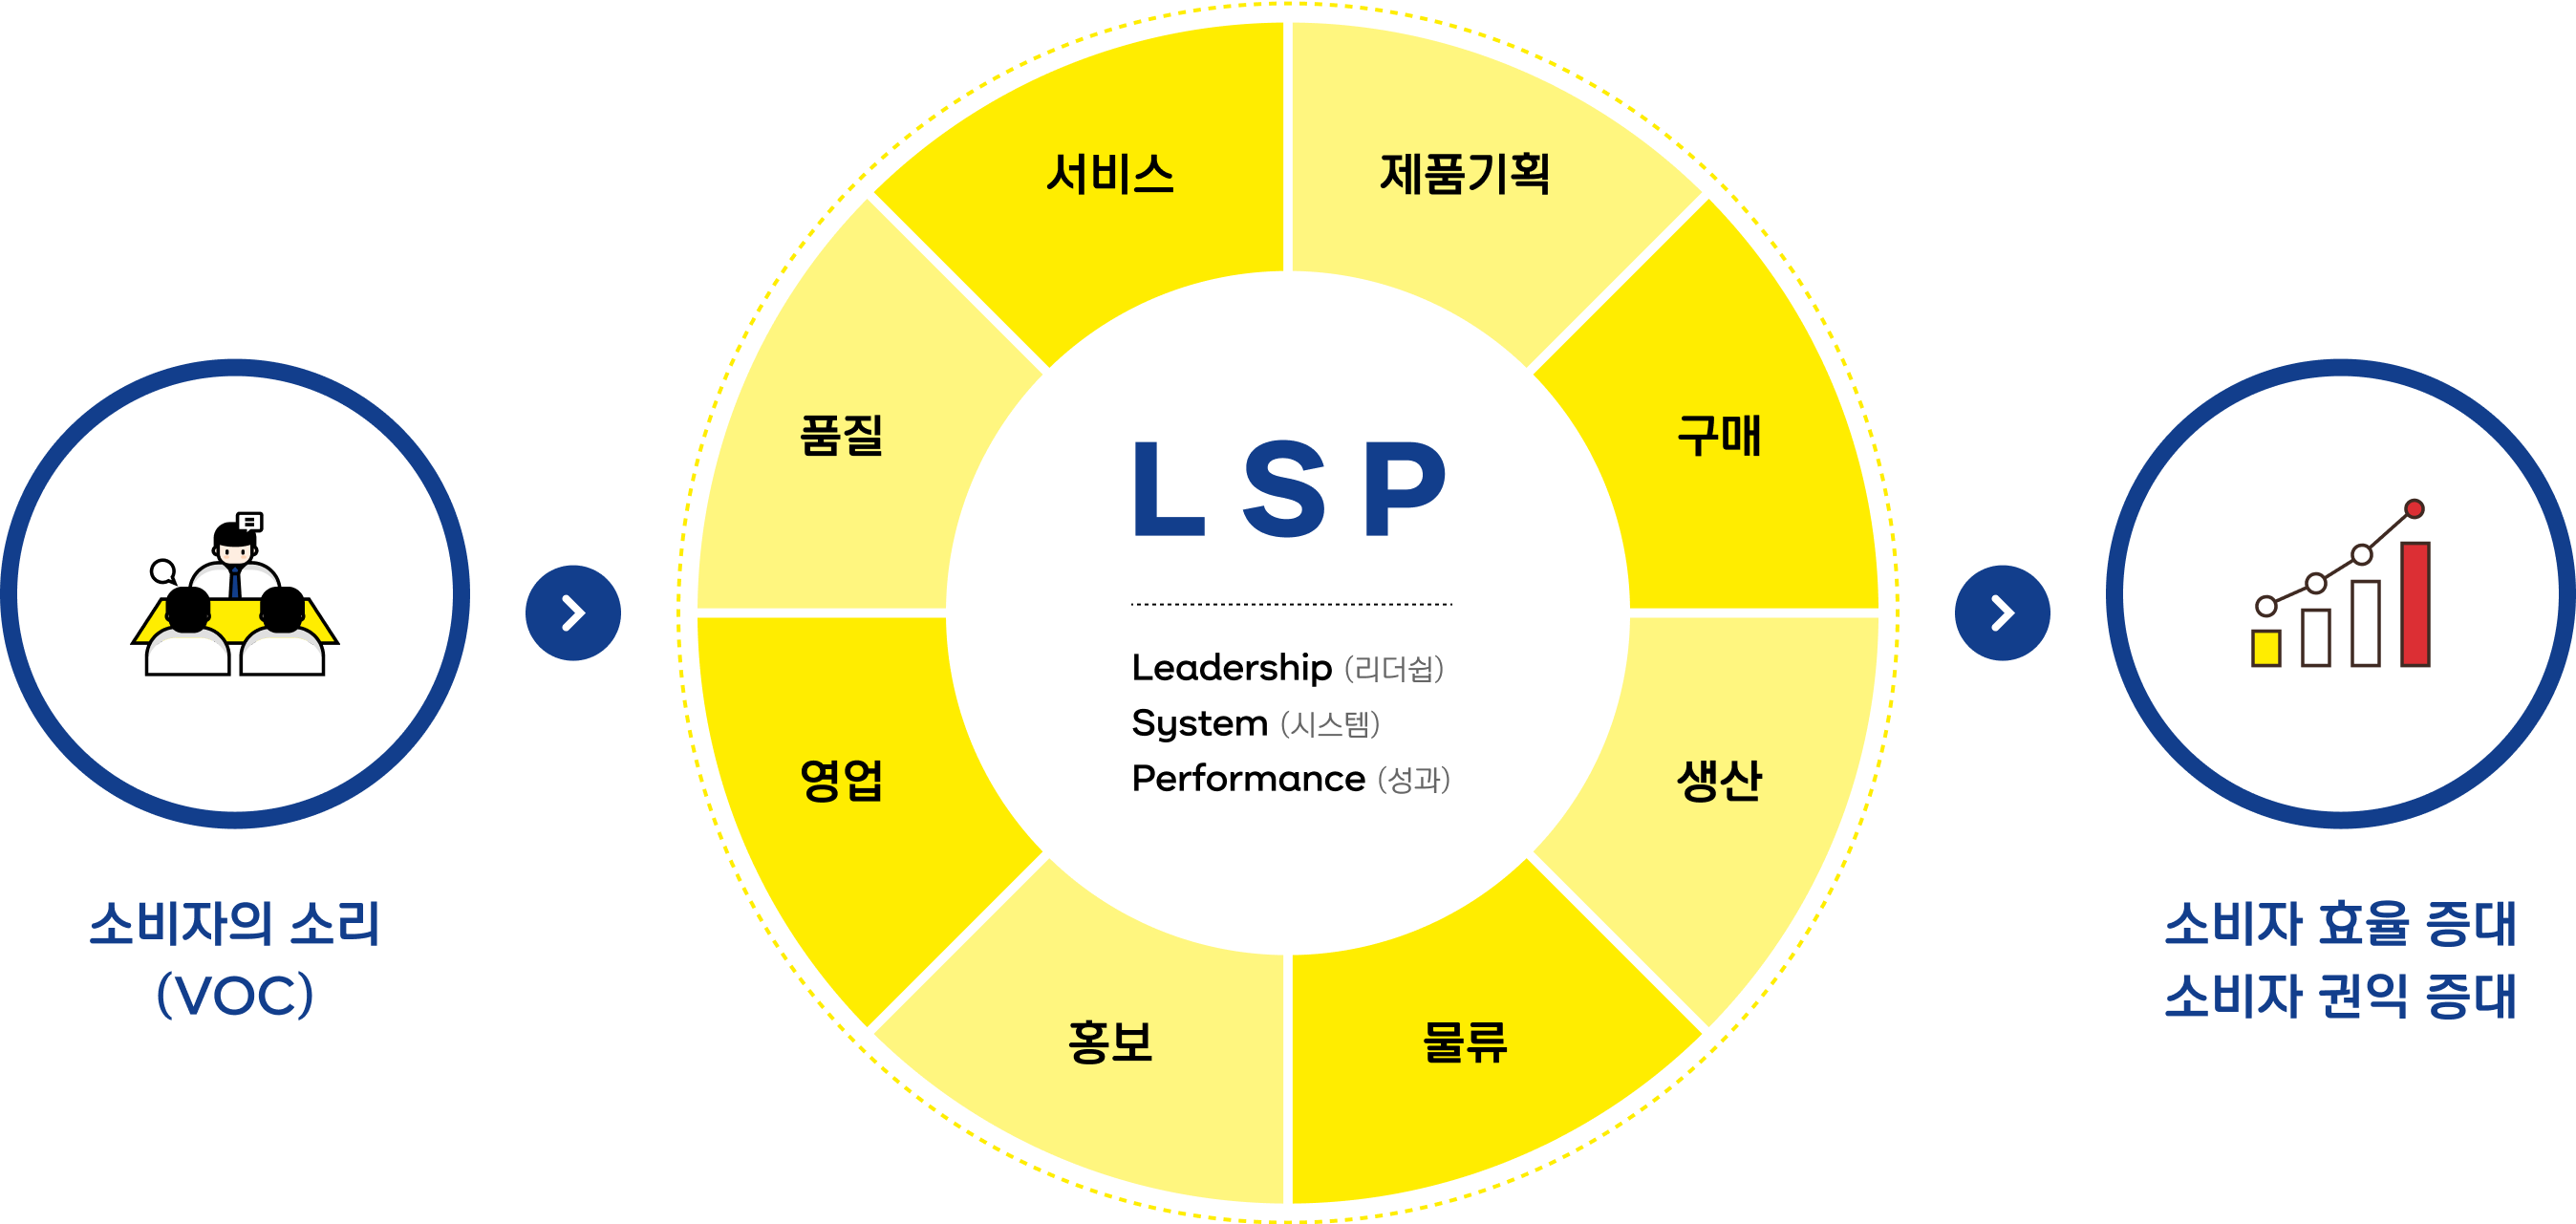 소비자의 소리(voc) > LSP[Leadership(리더쉽), System(시스템), Performance(성과)] - 서비스, 제품기획, 구매, 생산, 물류, 홍보, 영업, 품질 > 소비자효율증대, 소비자 권익 증대